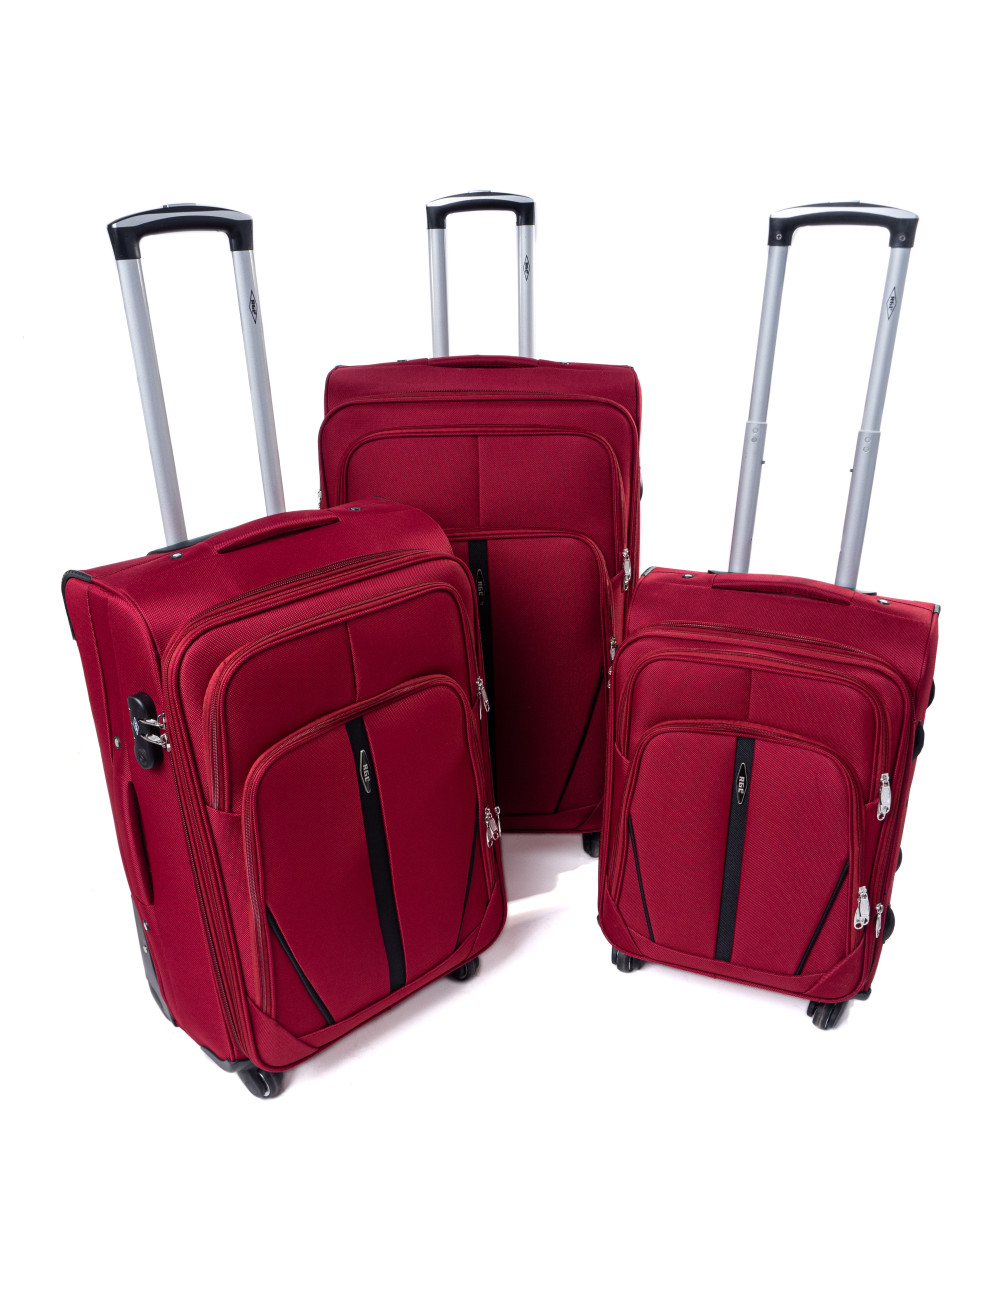 Zestaw walizek podróżnych na kółkach 3w1 S-020  XXL XL L - bordowy